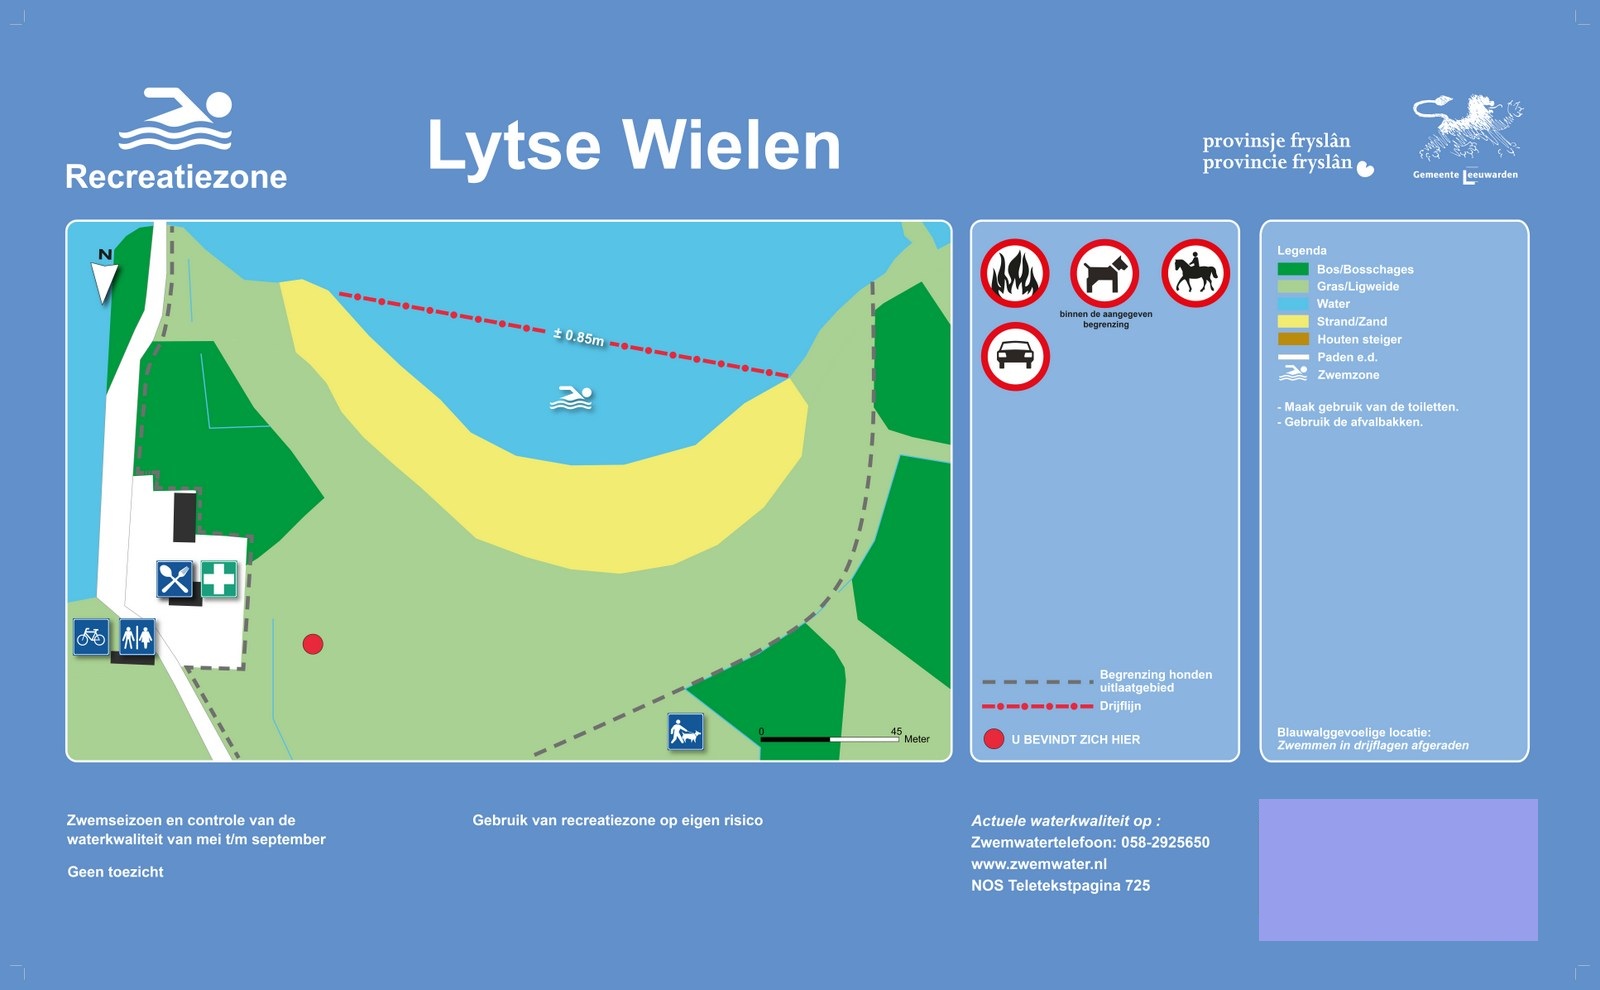 Het informatiebord bij zwemlocatie Lytse Wielen